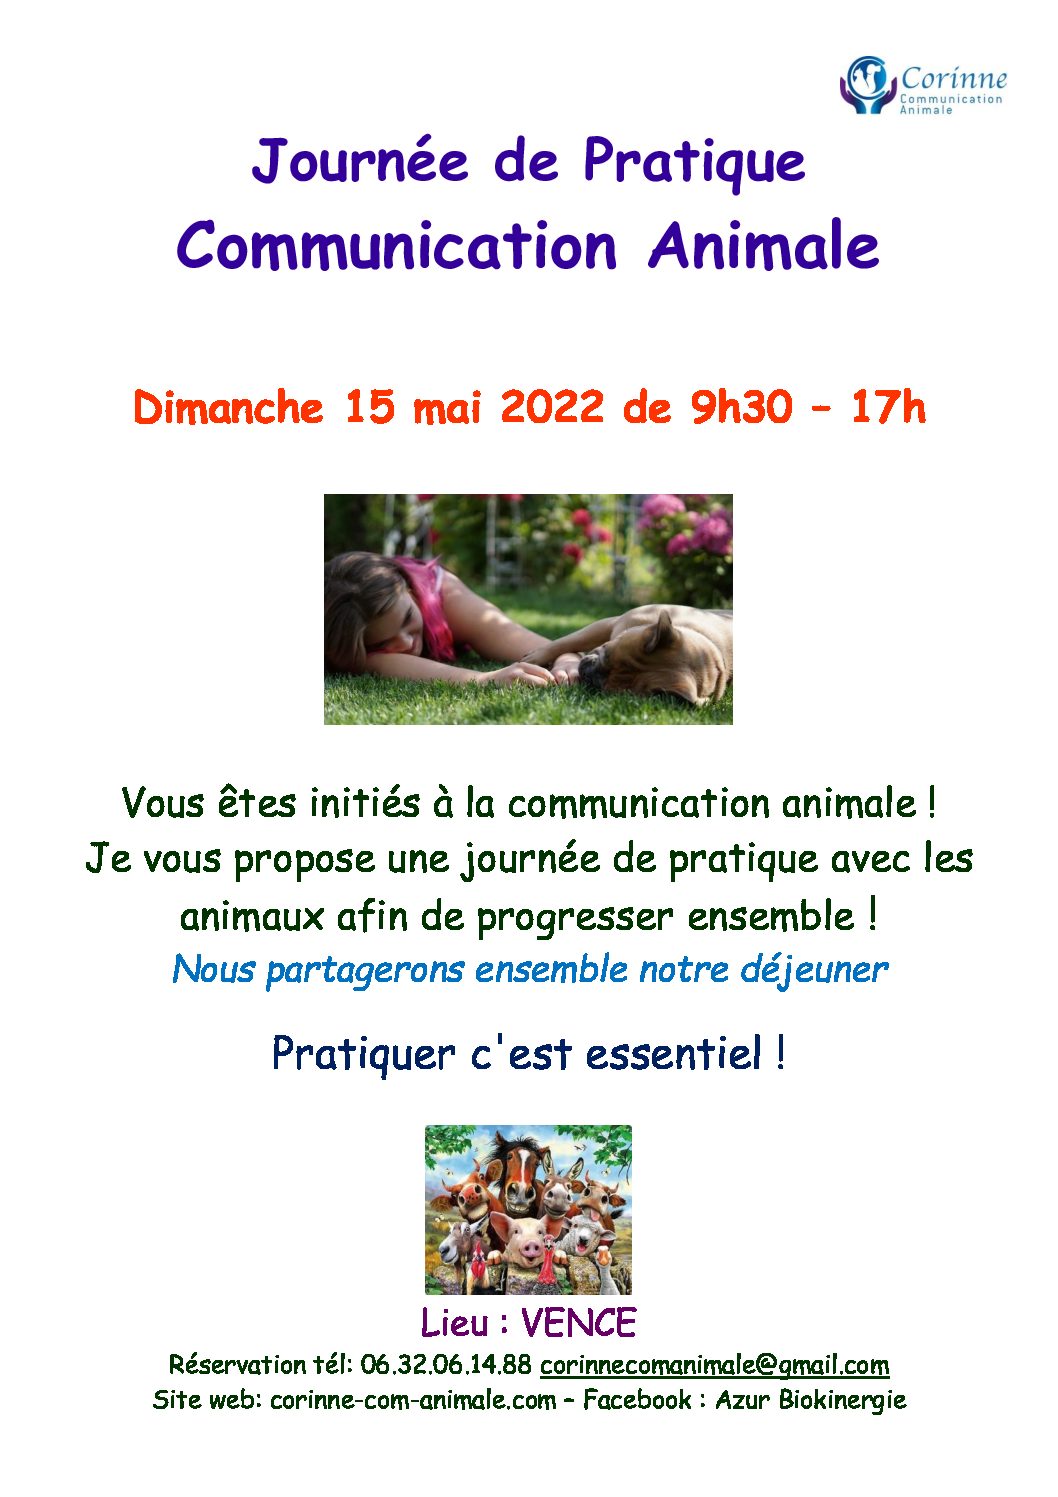 Venez pratiquer la Communication Animale